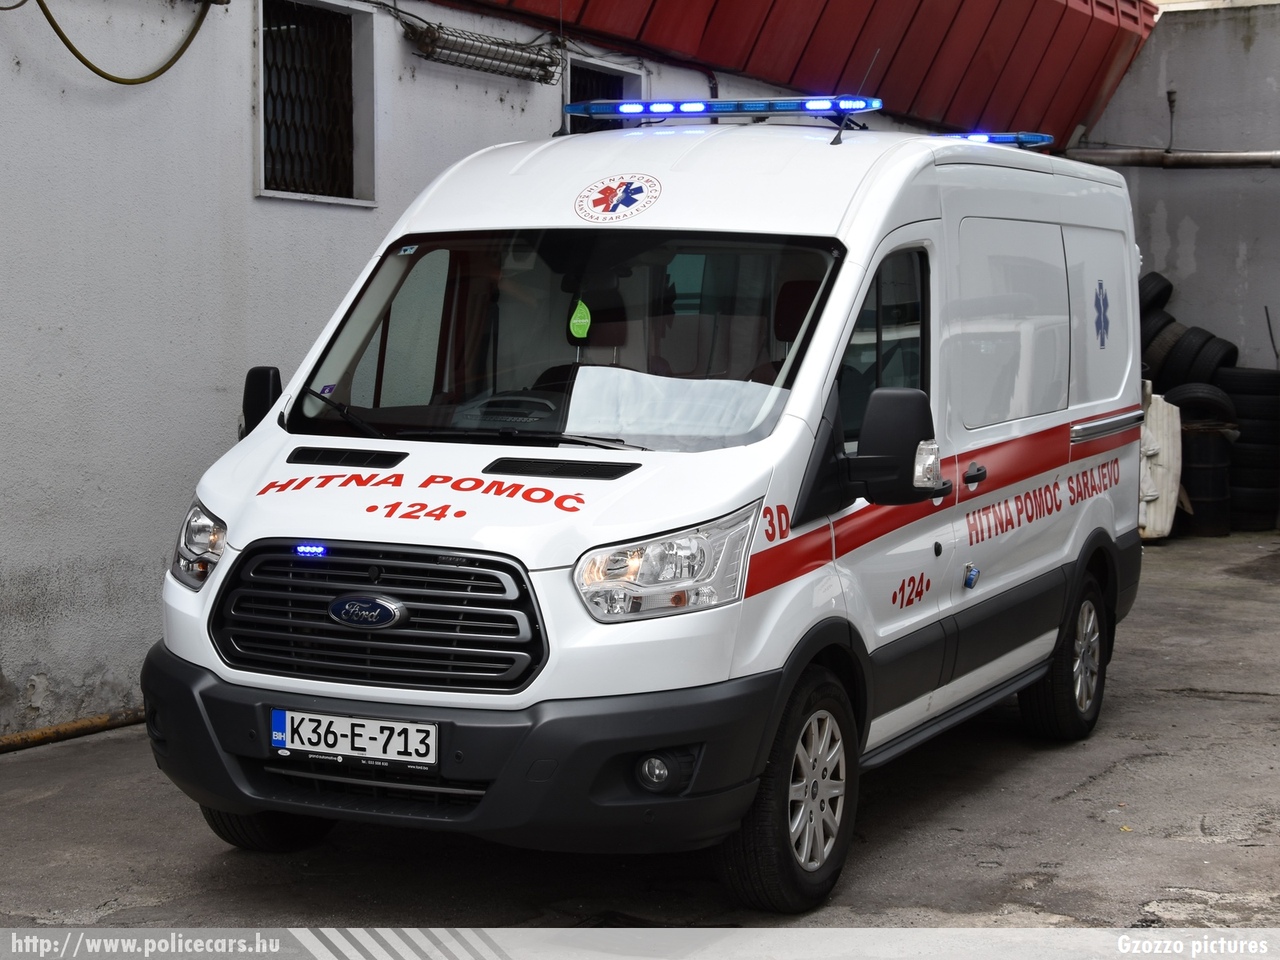 Ford Transit, Sarajevo, fotó: Gzozzo pictures
Keywords: Bosznia-Hercegovina mentő mentőautó bosnia bosnia-herzegovina ambulance bosnyák